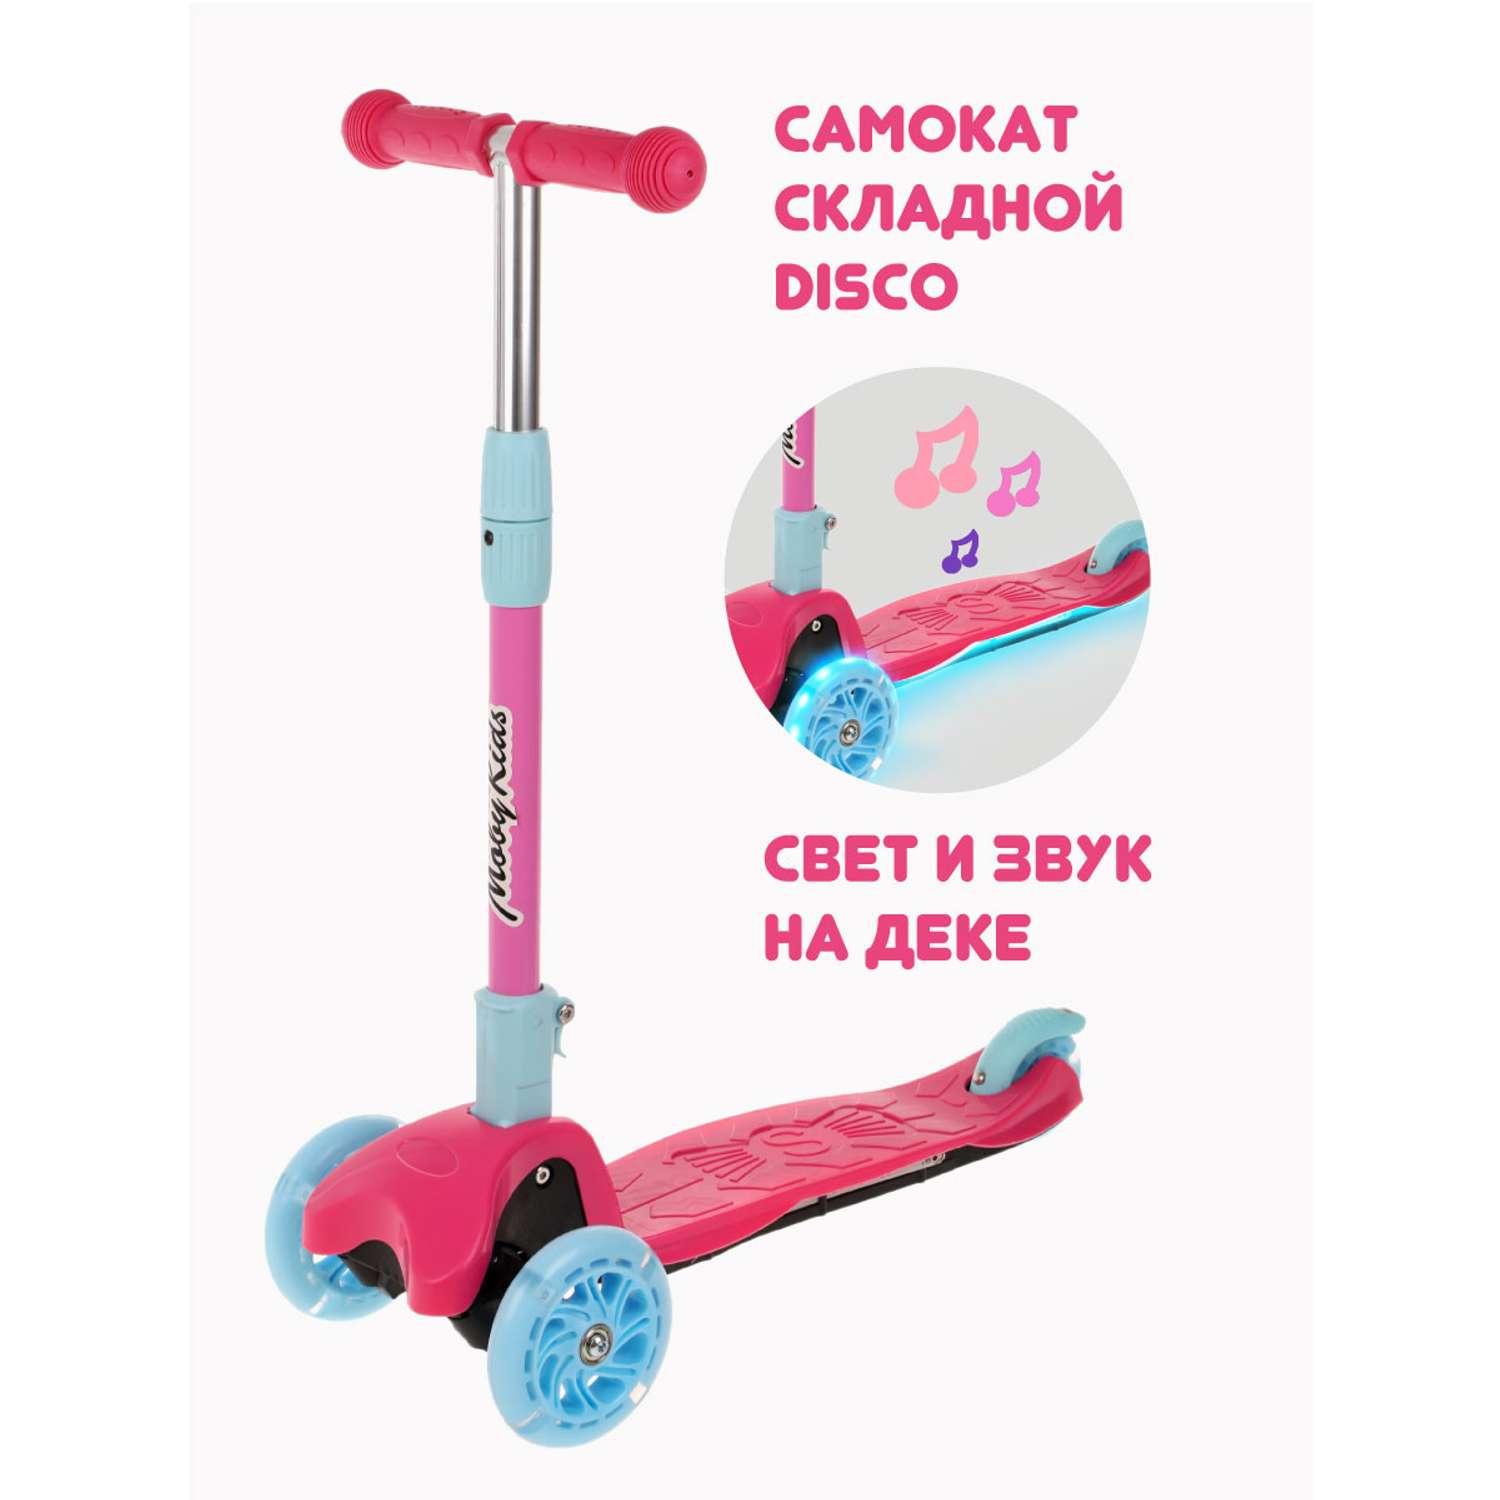 Самокат трехколесный Moby Kids для девочек складной Disco свет звук. Светящиеся колеса 120 PU - фото 2